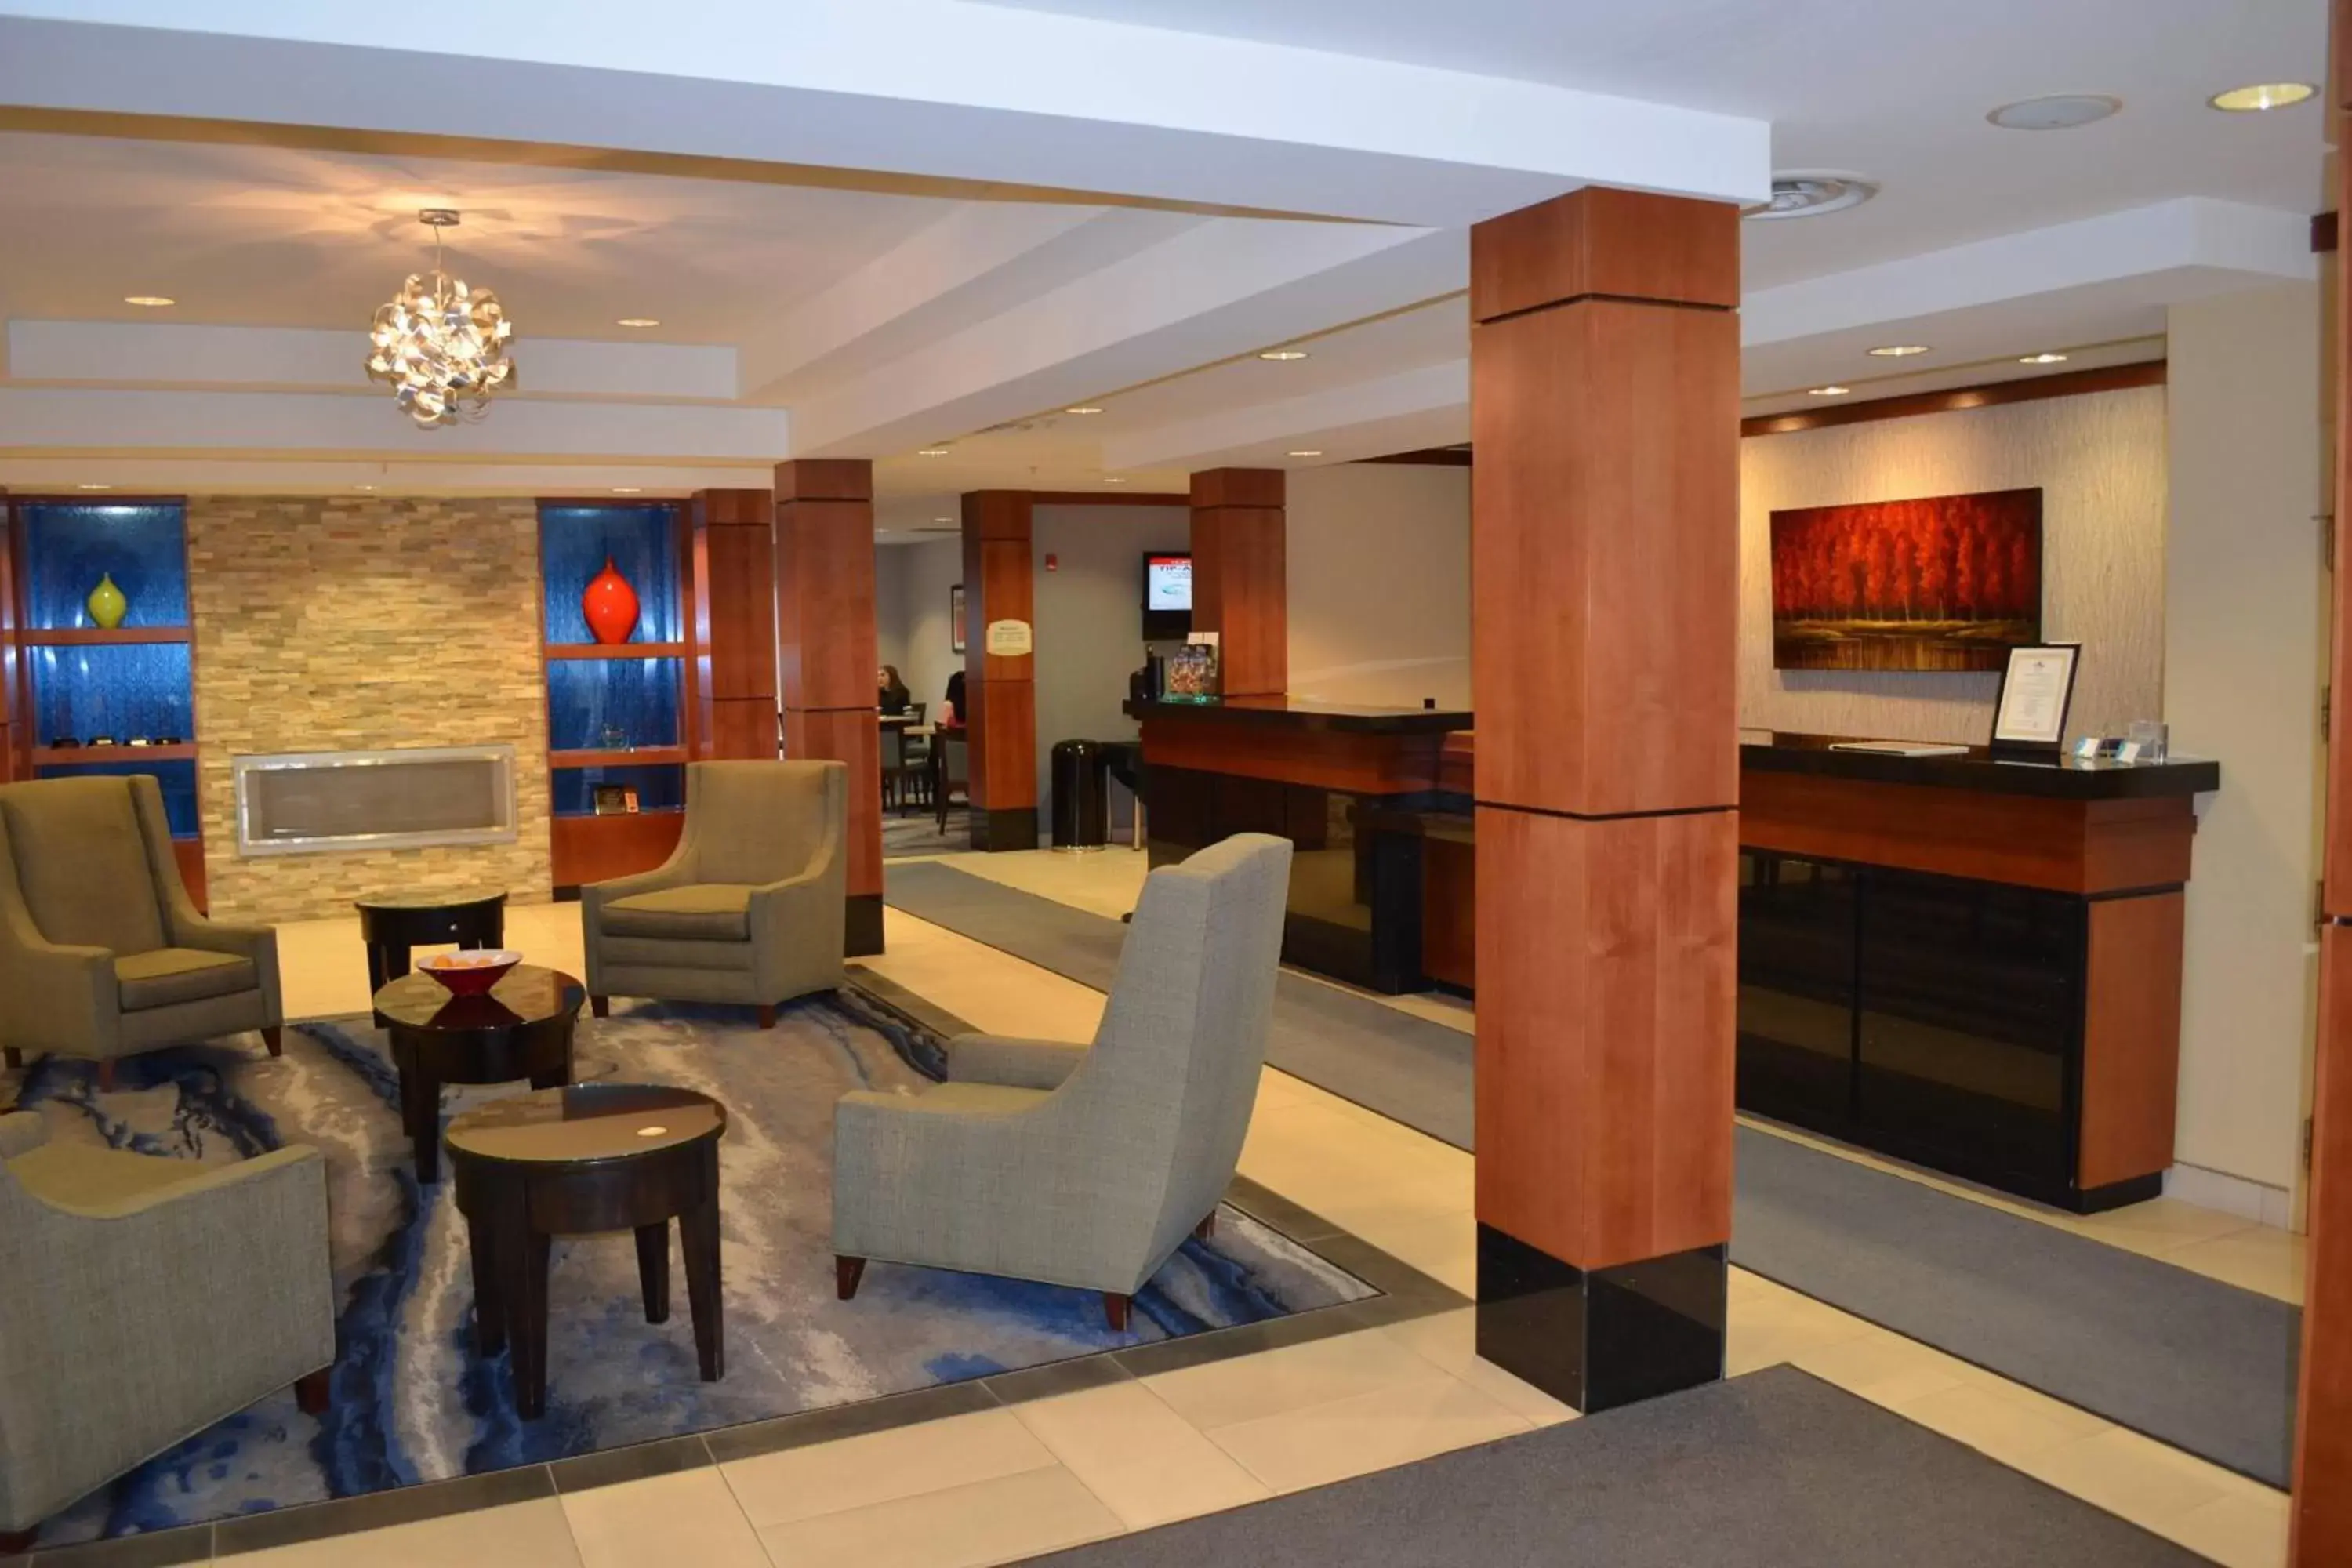 Lobby or reception, Lobby/Reception in Fairfield Inn & Suites by Marriott Sault Ste. Marie